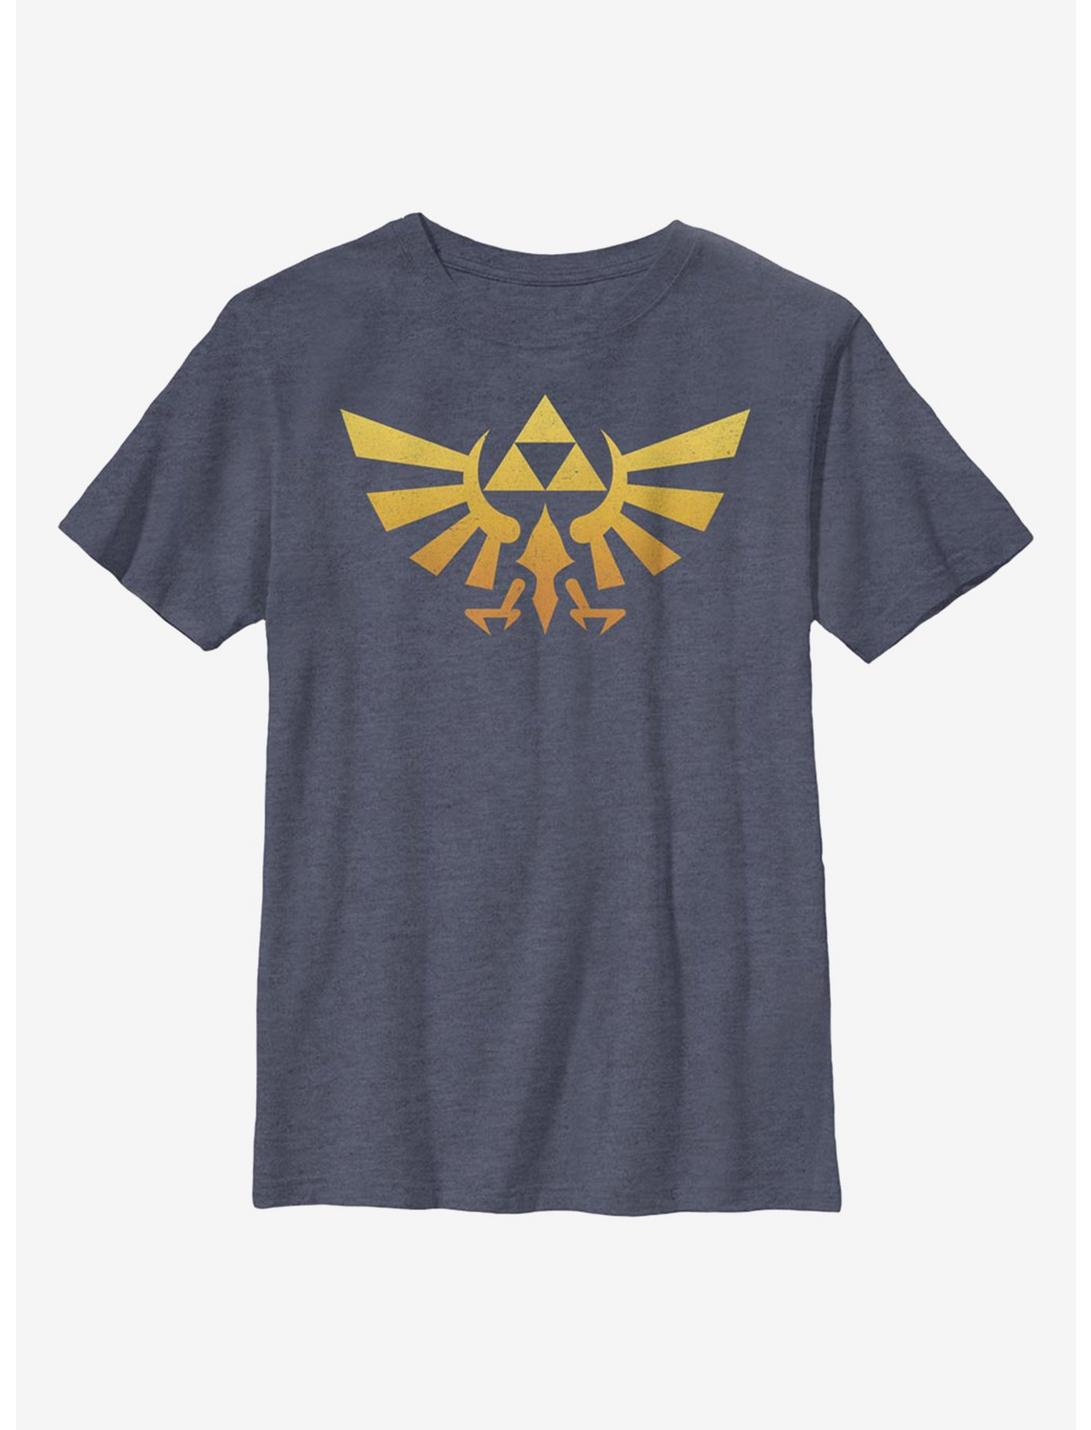 Nintendo The Legend Of Zelda Gradientforce Youth T-Shirt, NAVY HTR, hi-res